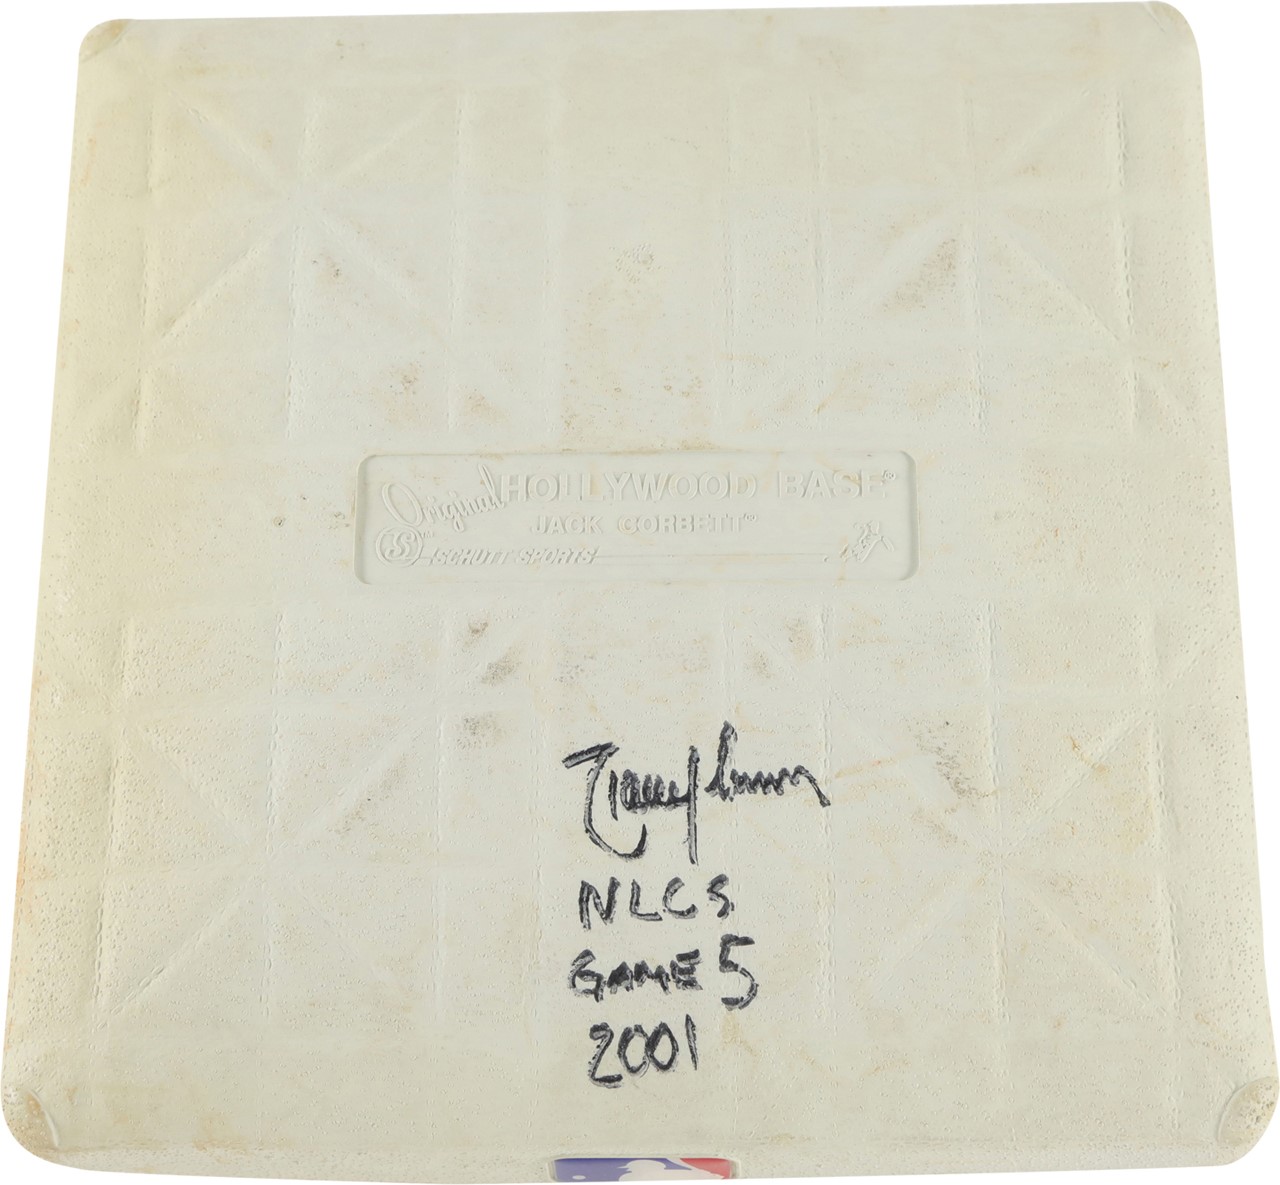 Baseball Equipment - 2001 NLCS Game 5 Randy Johnson Signed Game Used Base (MLB & Steiner)